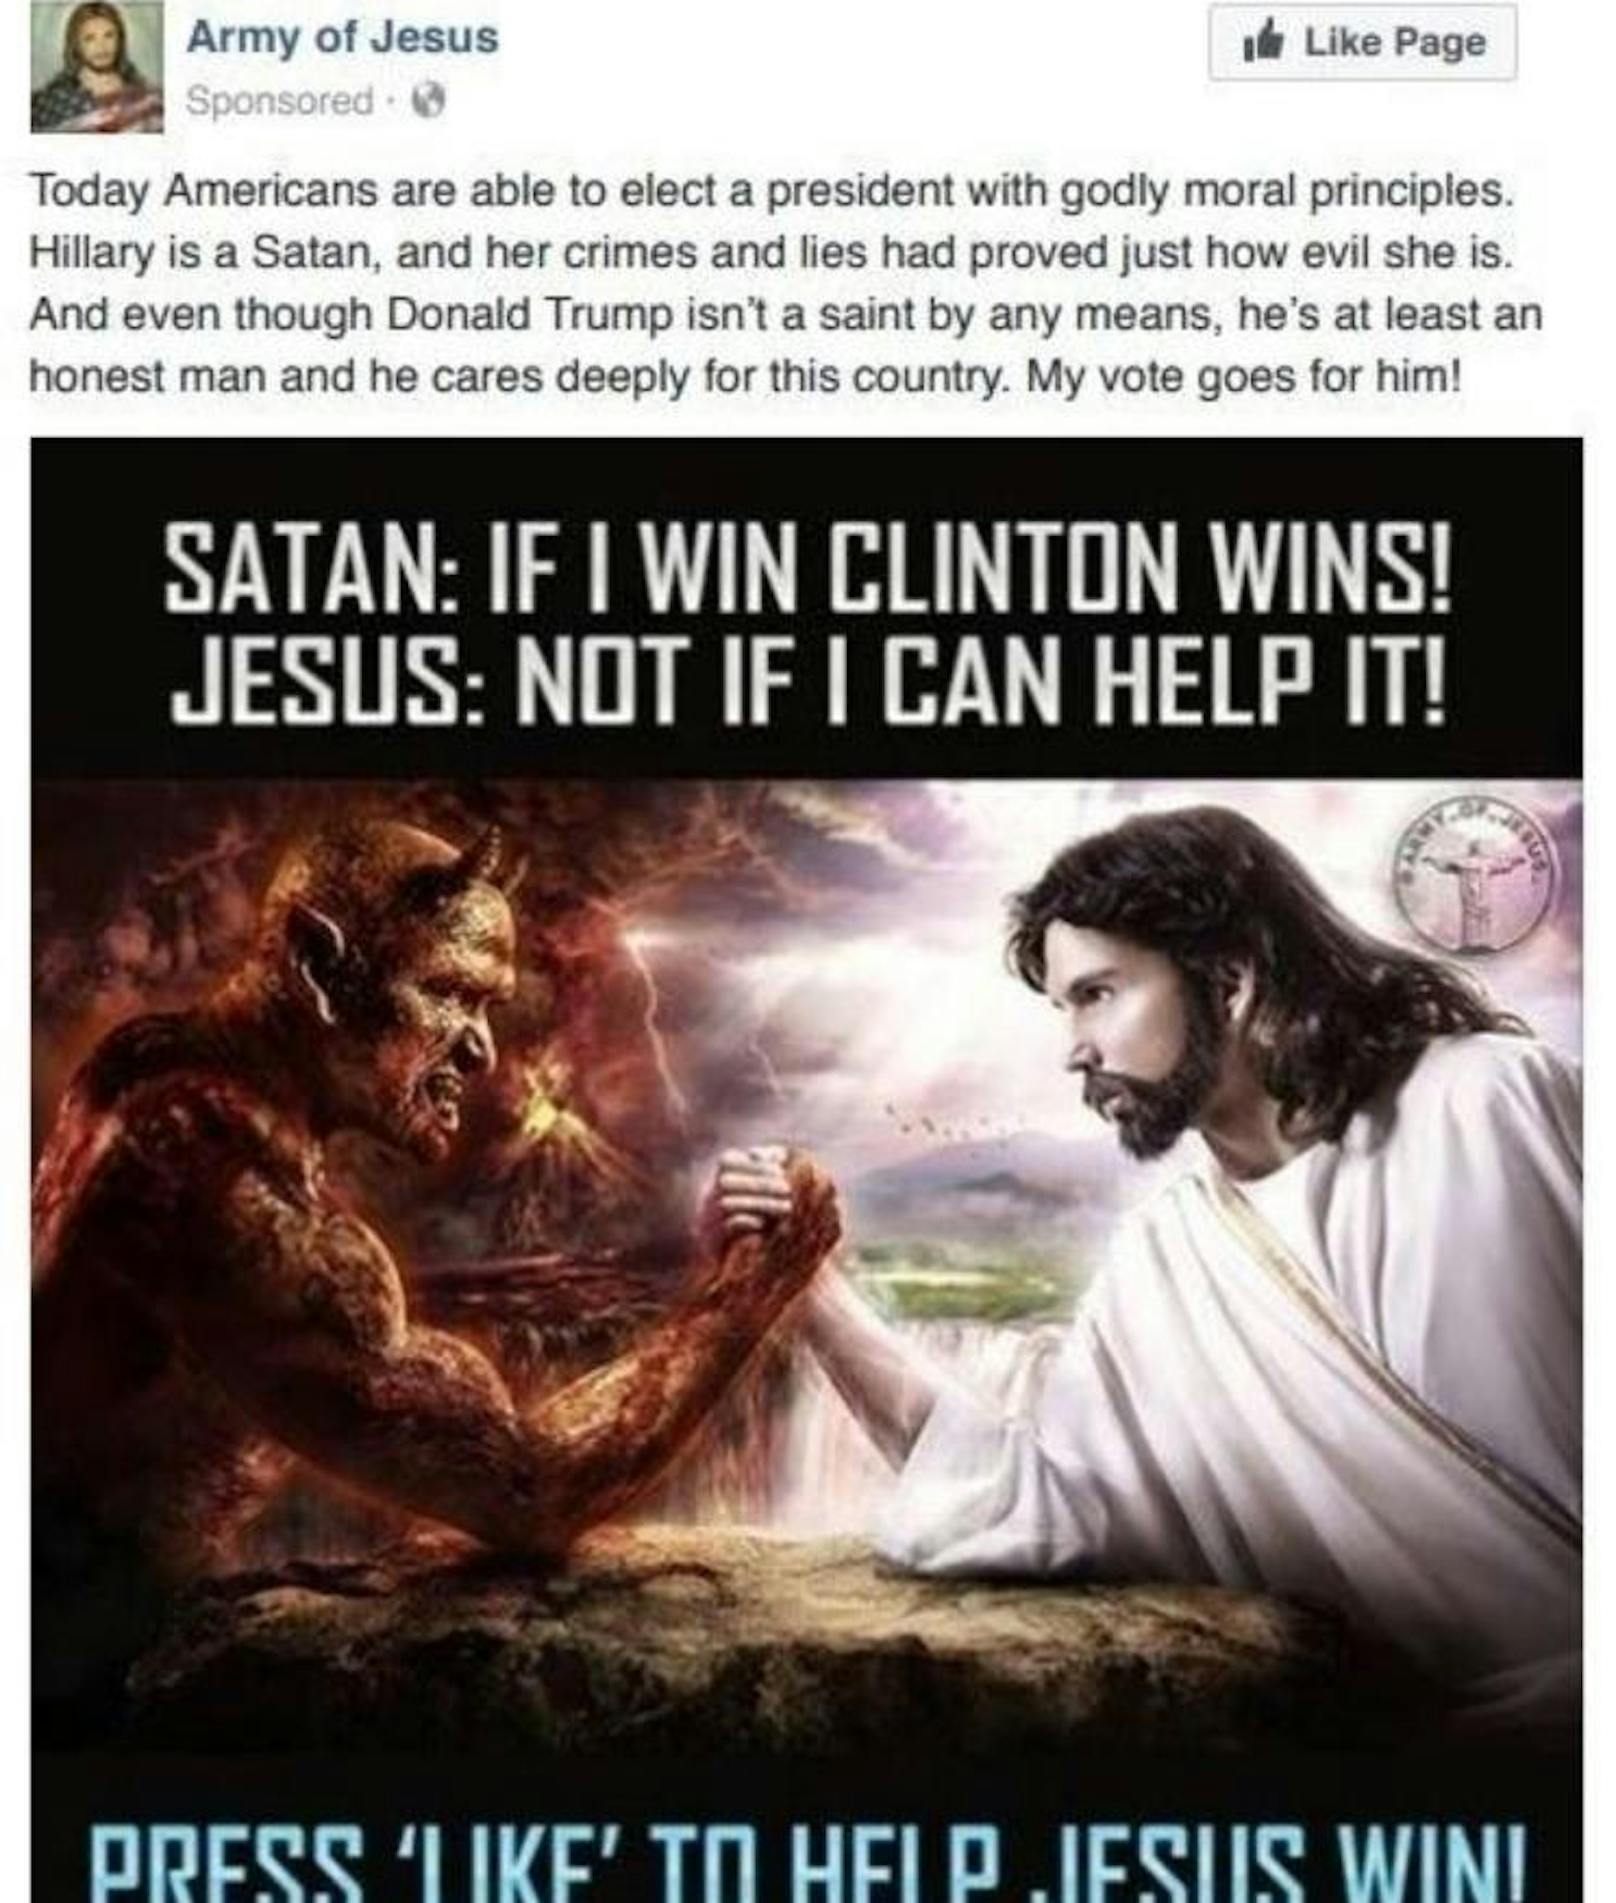 Die vermeintliche "Army of Jesus" war Absender dieser Satan-Posts: "Hillary ist der Teufel, und ihre Verbrechen und Lügen haben bewiesen, wie teuflisch sie ist. Und obwohl Donald Trump wahrlich kein Heiliger ist, ist er wenigstens ein ehrlicher Mann, der sich tief um sein Land sorgt. Meine Stimme gehört ihm!"